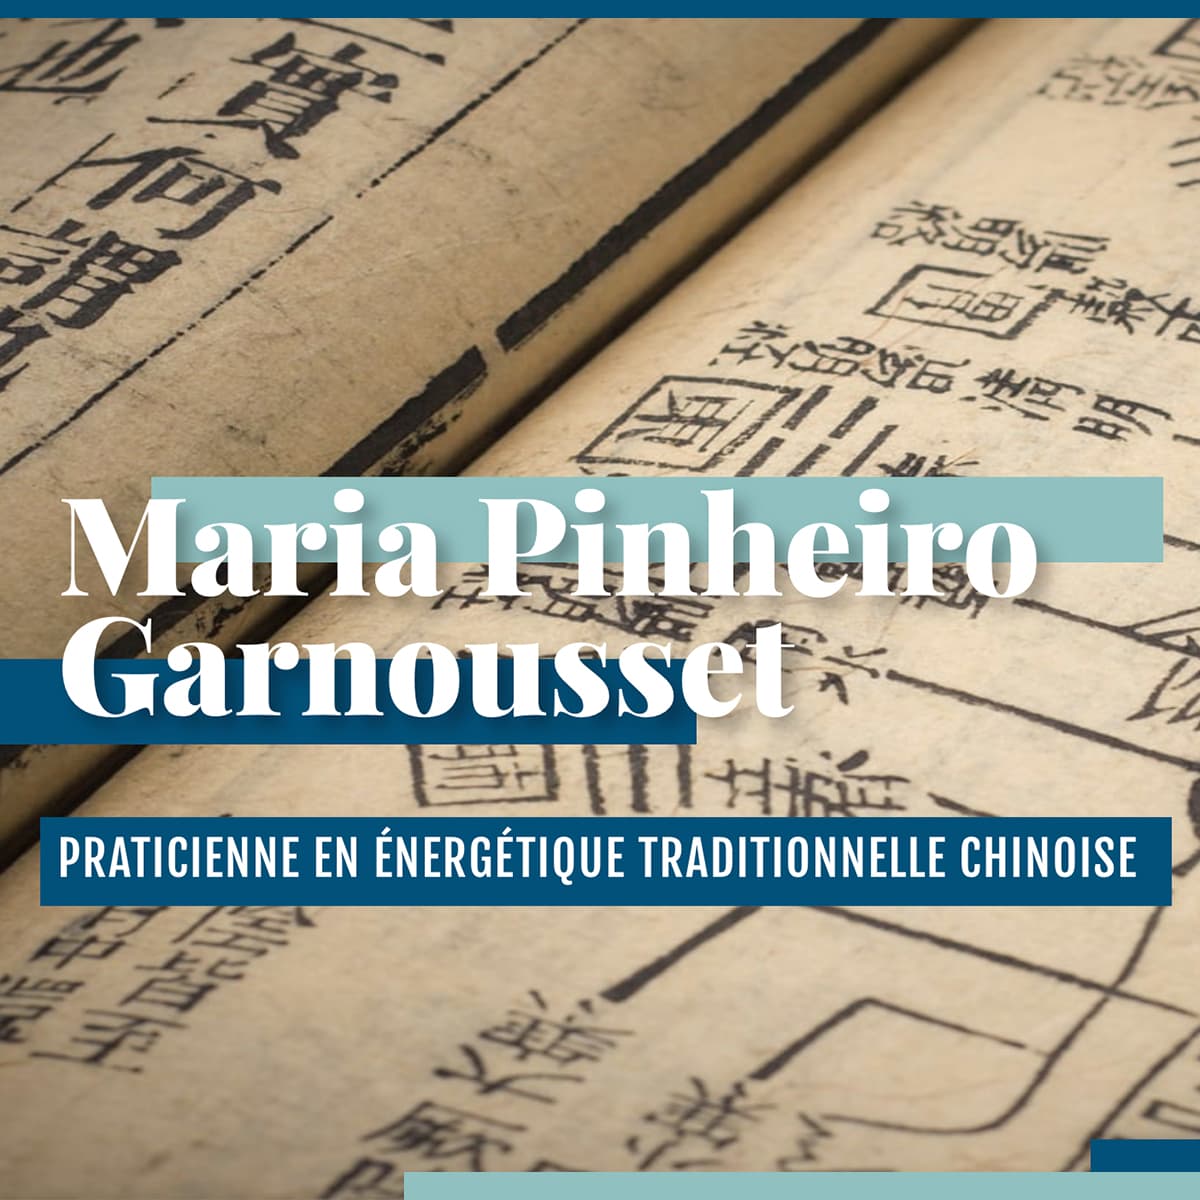 MARIA PINHEIRO GARNOUSSET